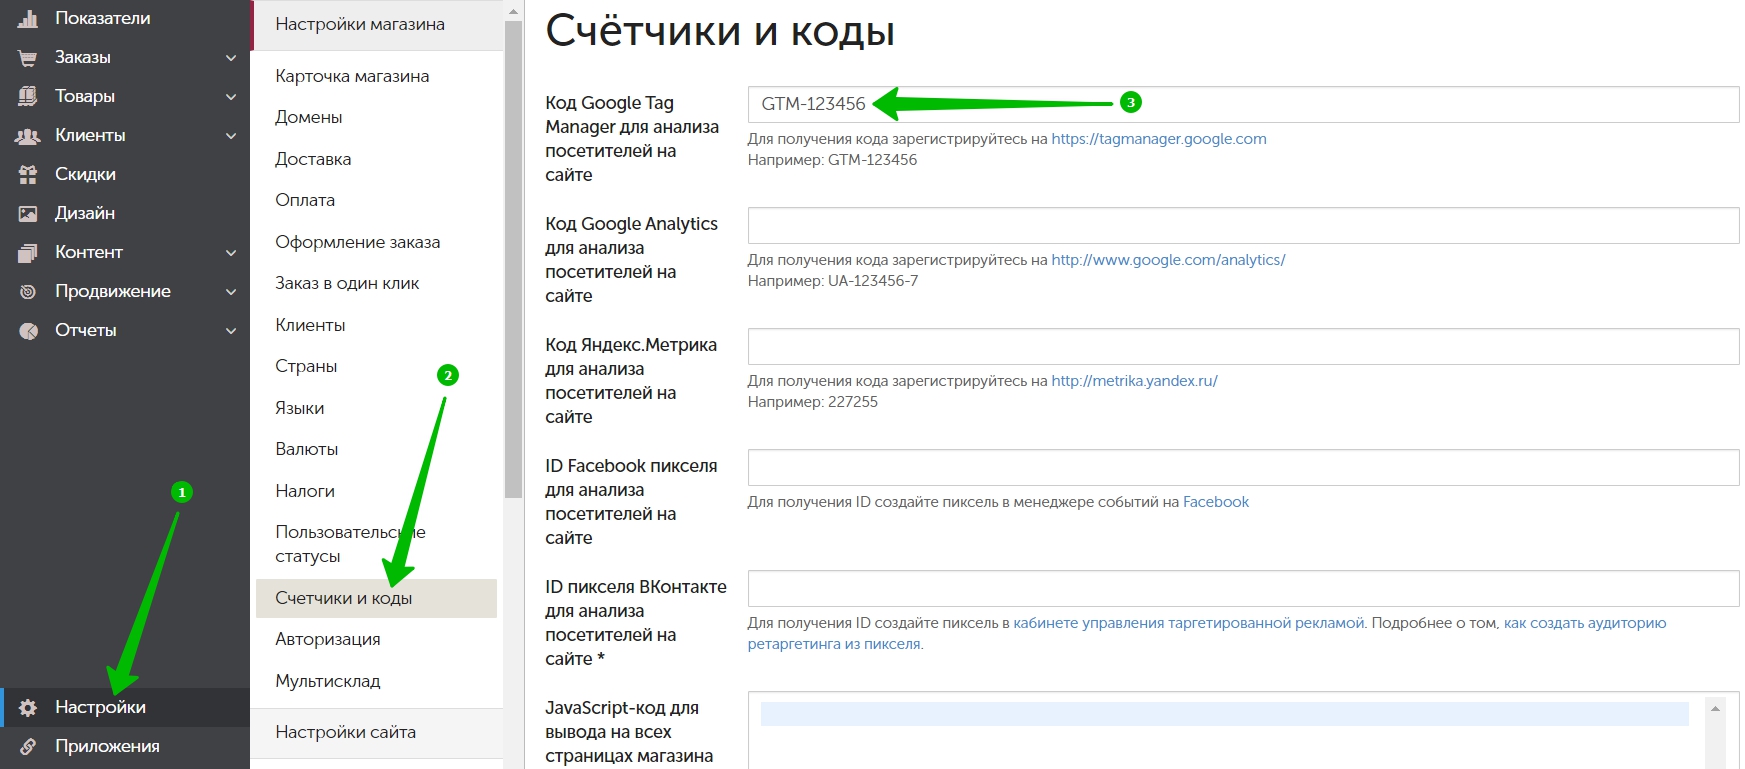 Как связать интернет-магазины в Яндекс. Работе с отчетами и Метрикой